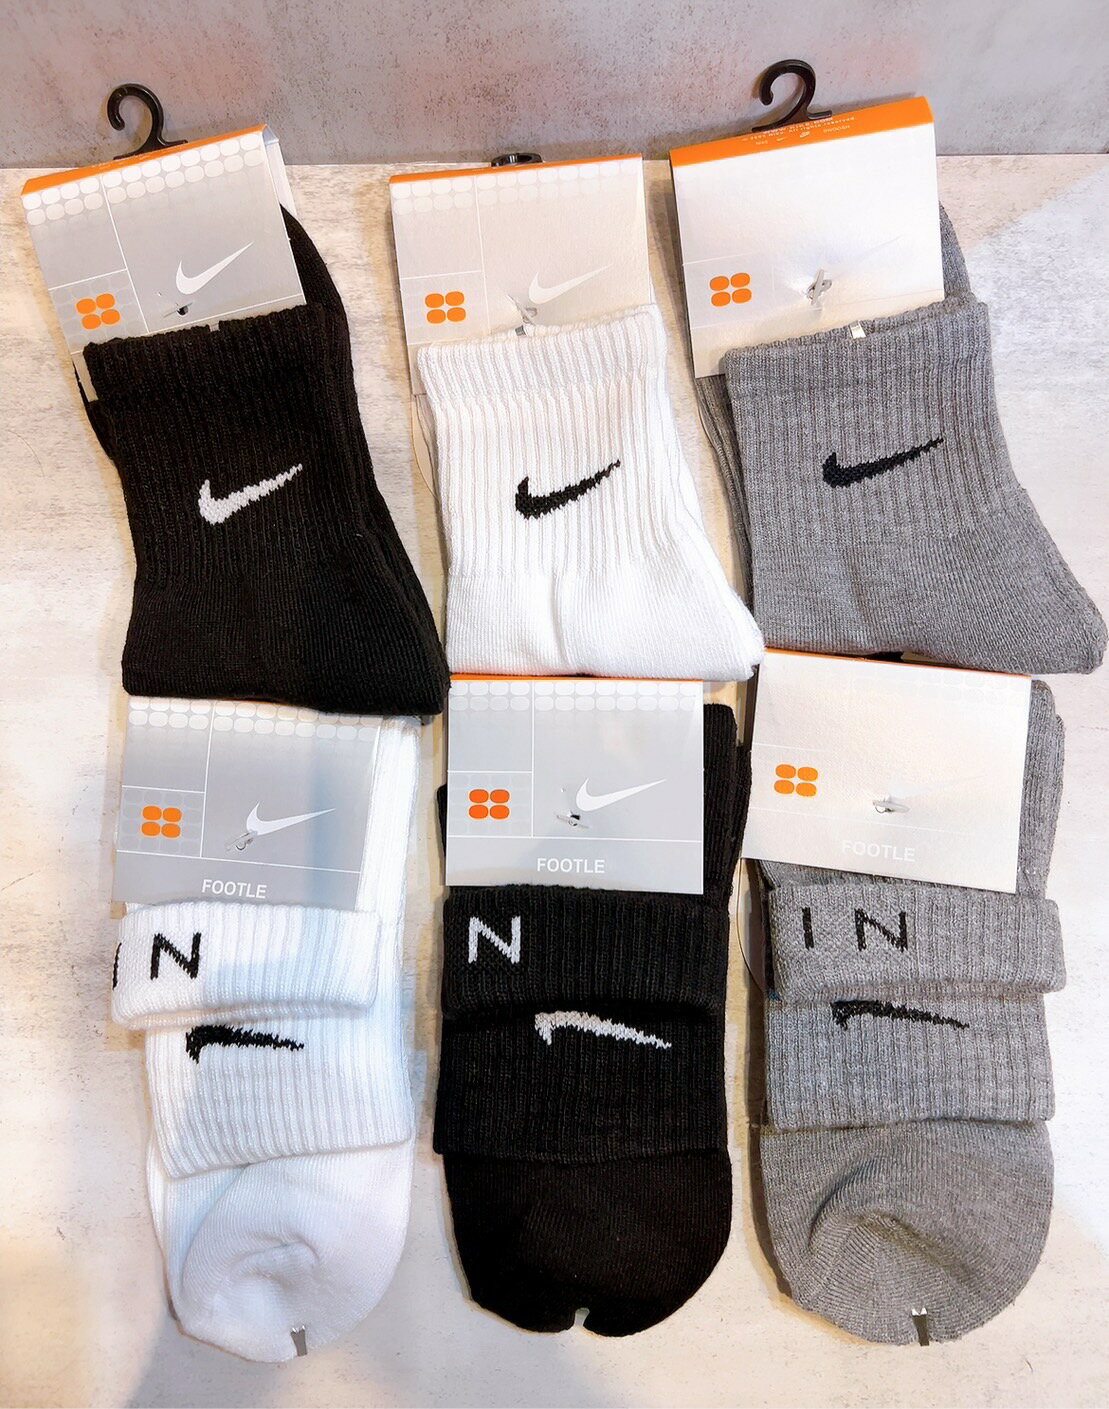 【Nike】襪子 黑、白、灰、黑反折兩穿、白反折兩穿